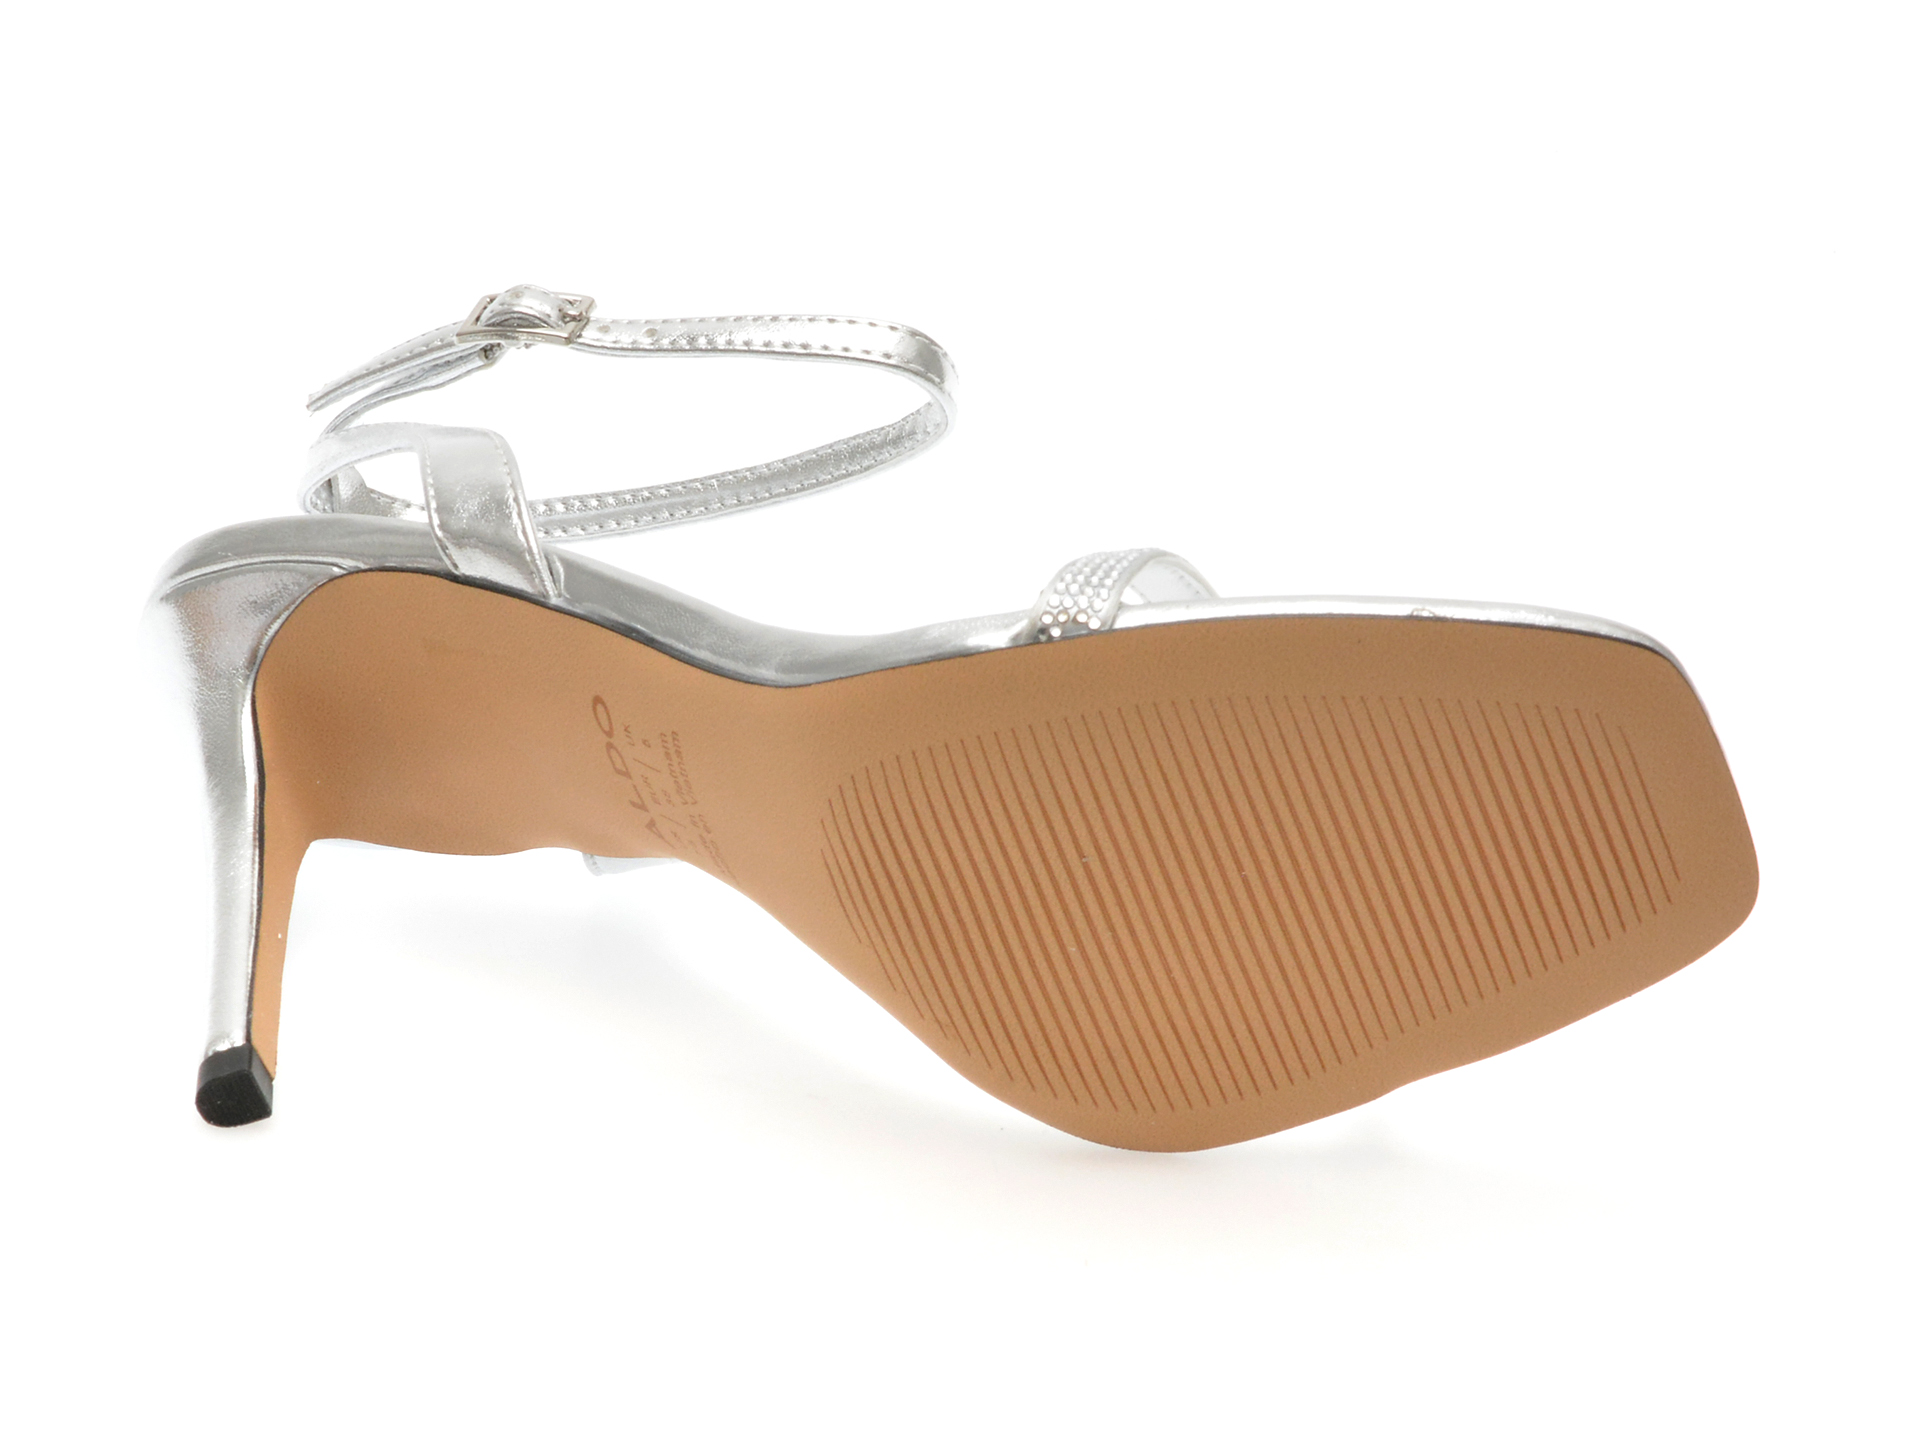 Sandale elegante ALDO argintii, 13708122, din piele ecologica